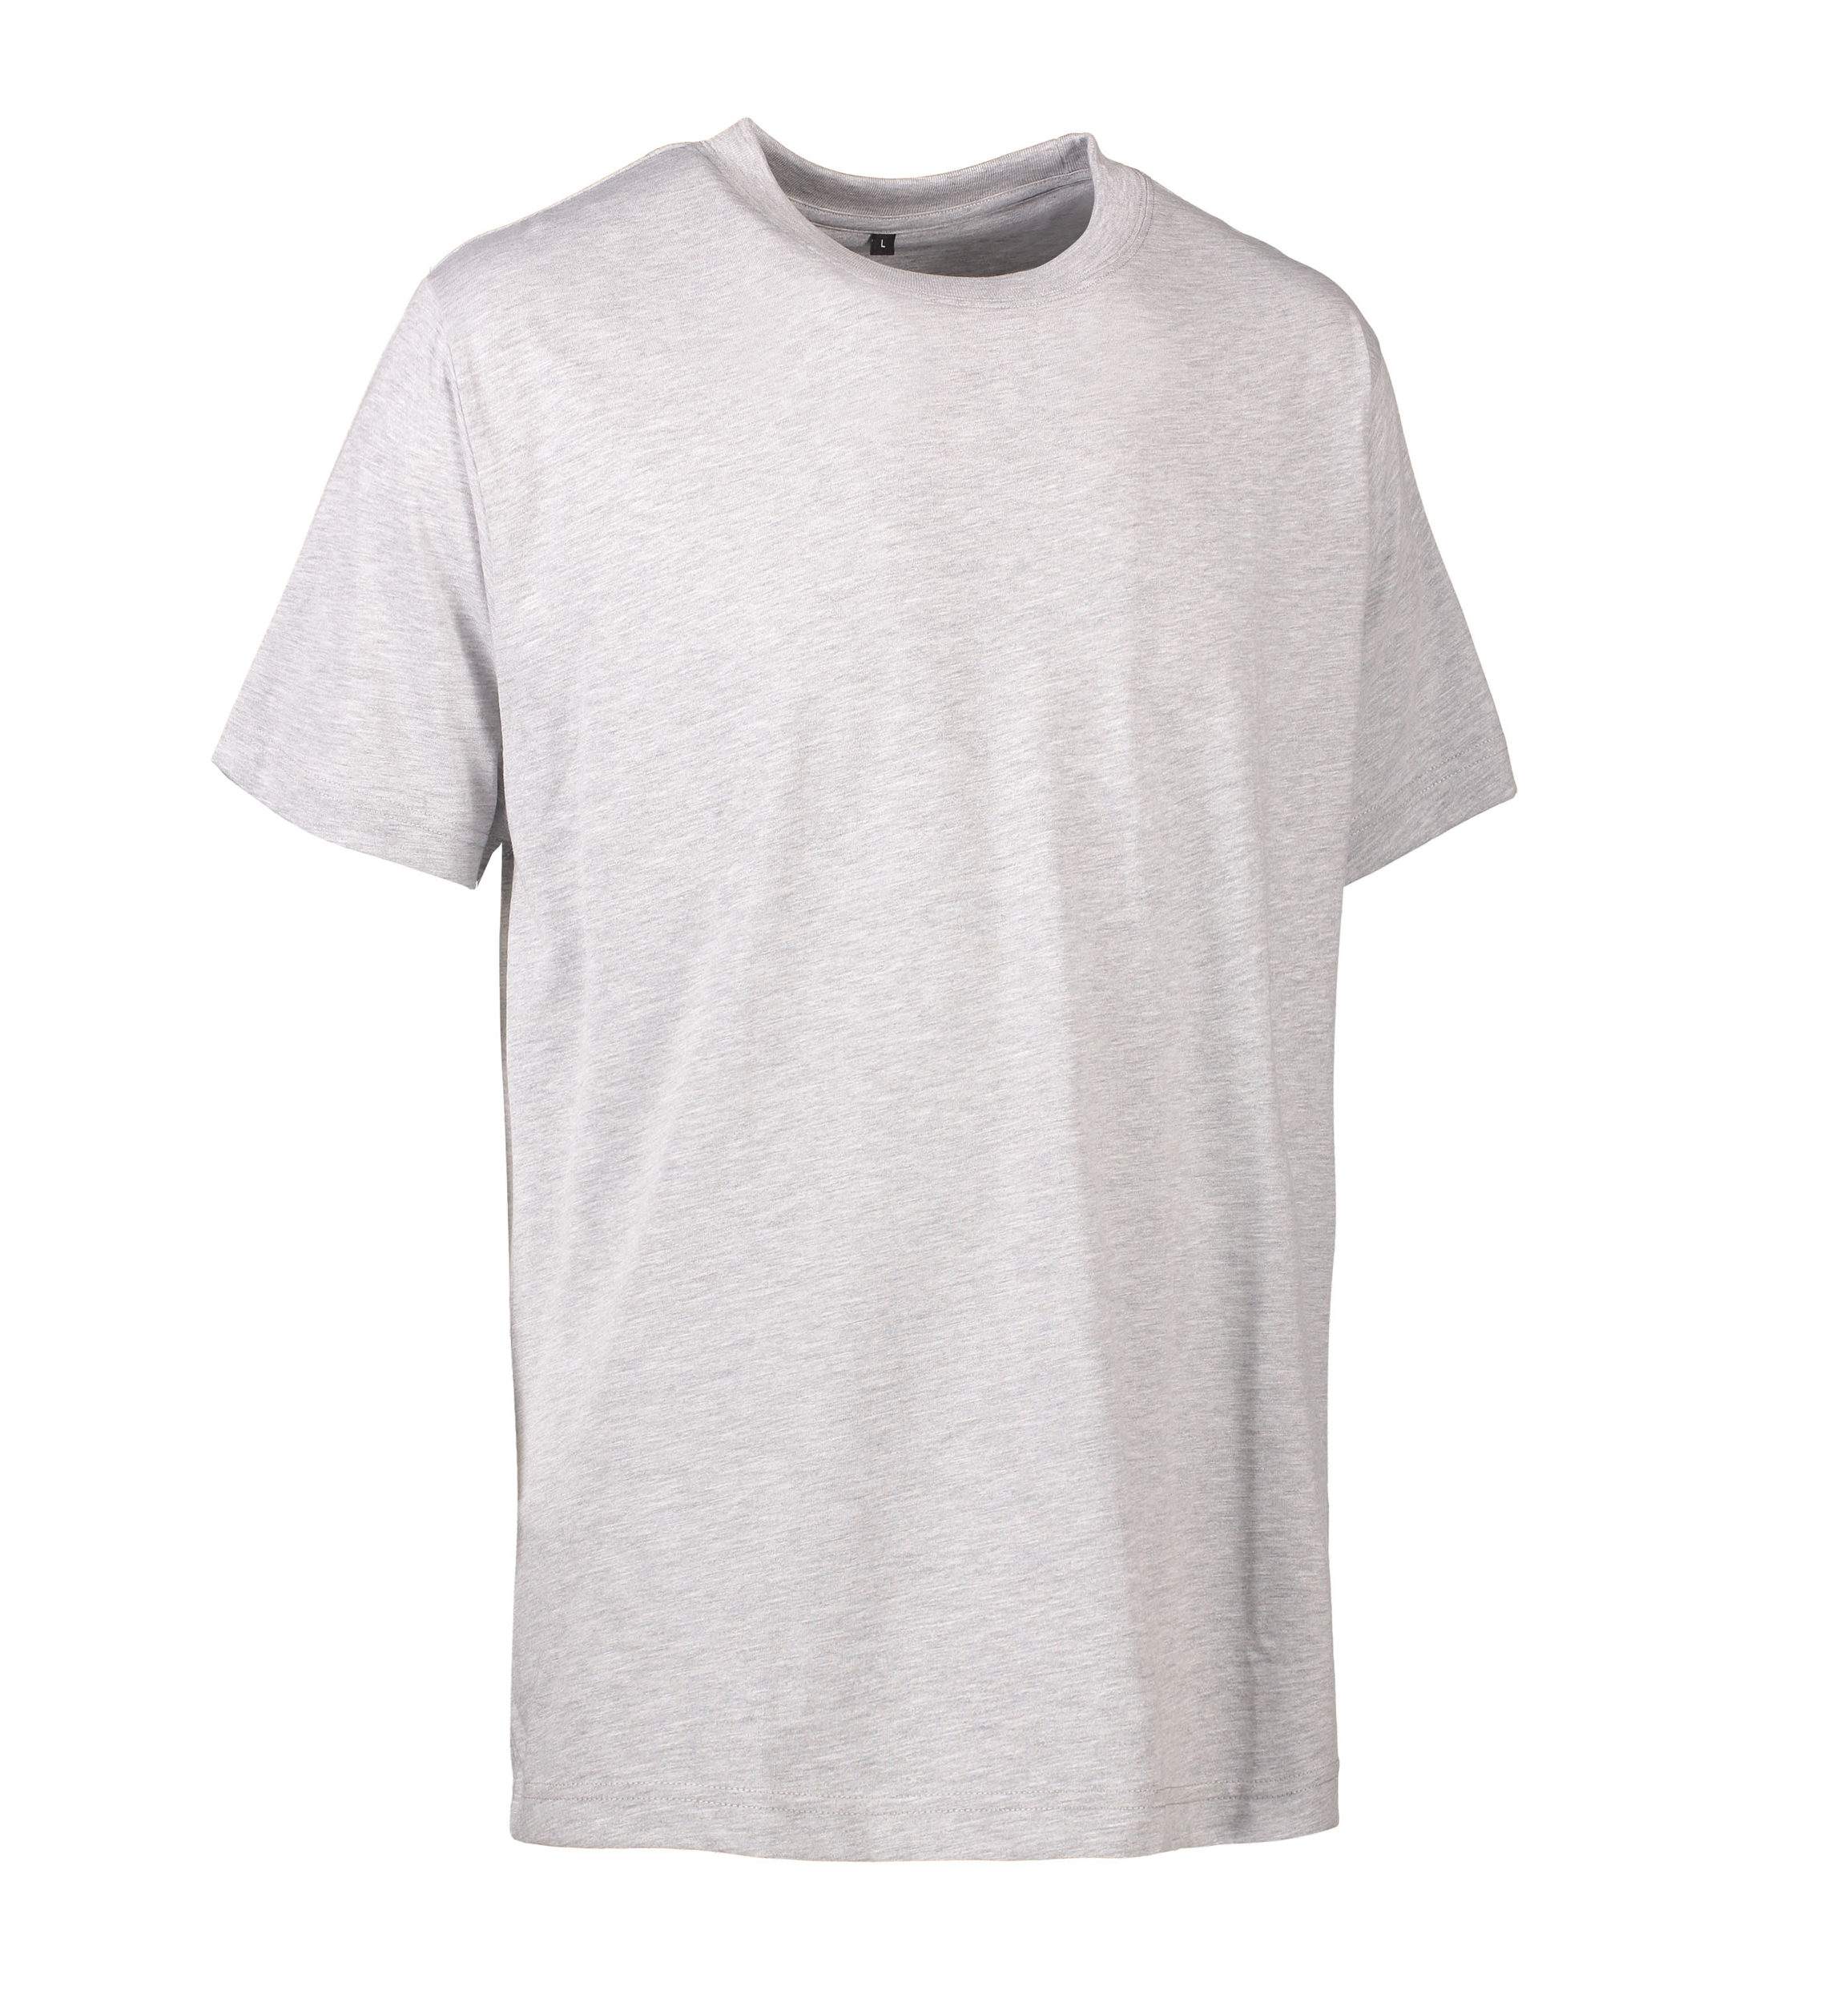 Se Slidstærk t-shirt i grå til mænd - S hos Sygeplejebutikken.dk